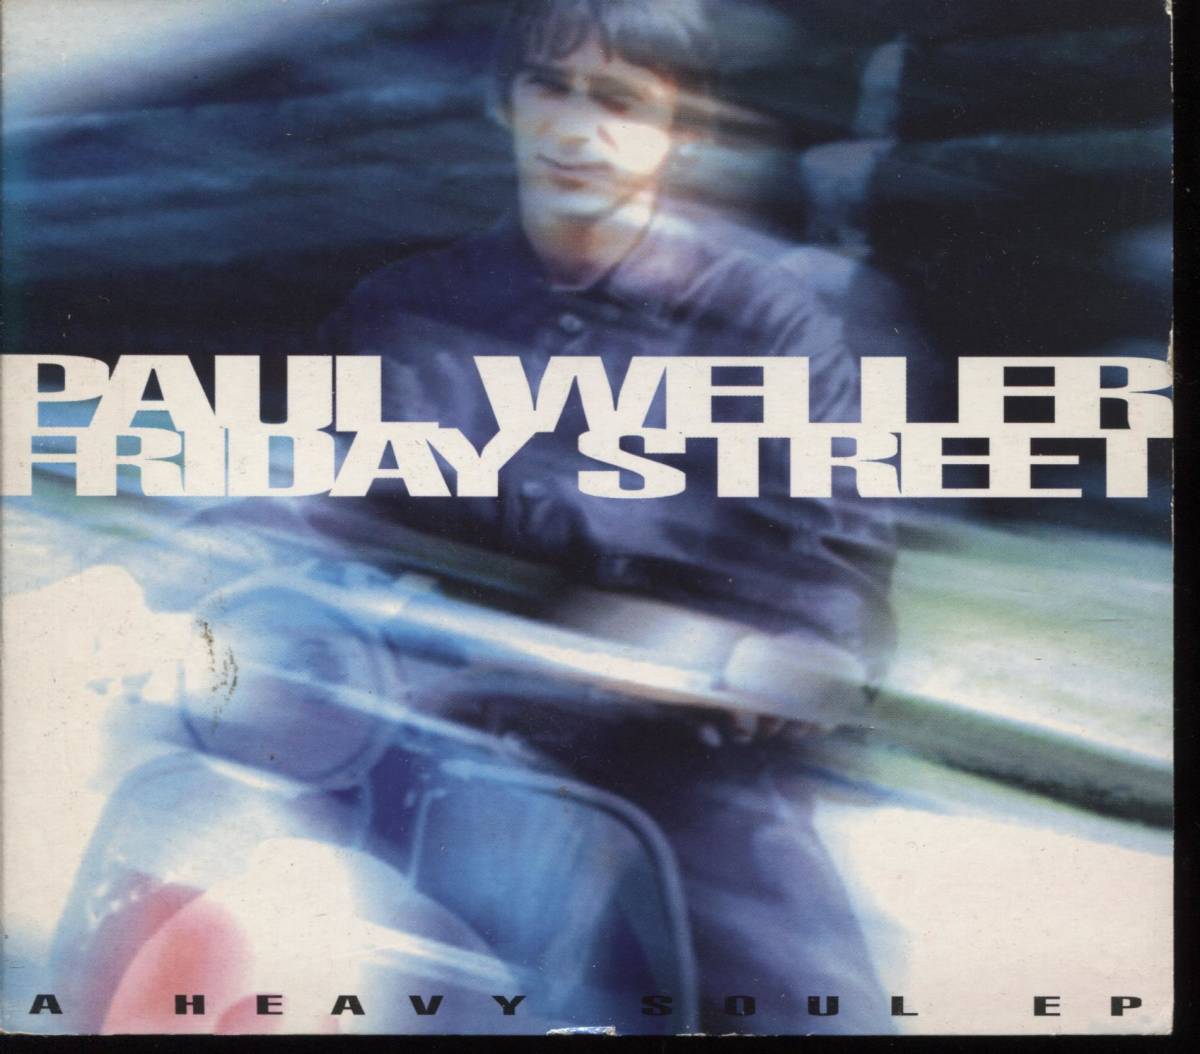 ポール・ウェラー「フライデイ・ストリート」CDS_画像1